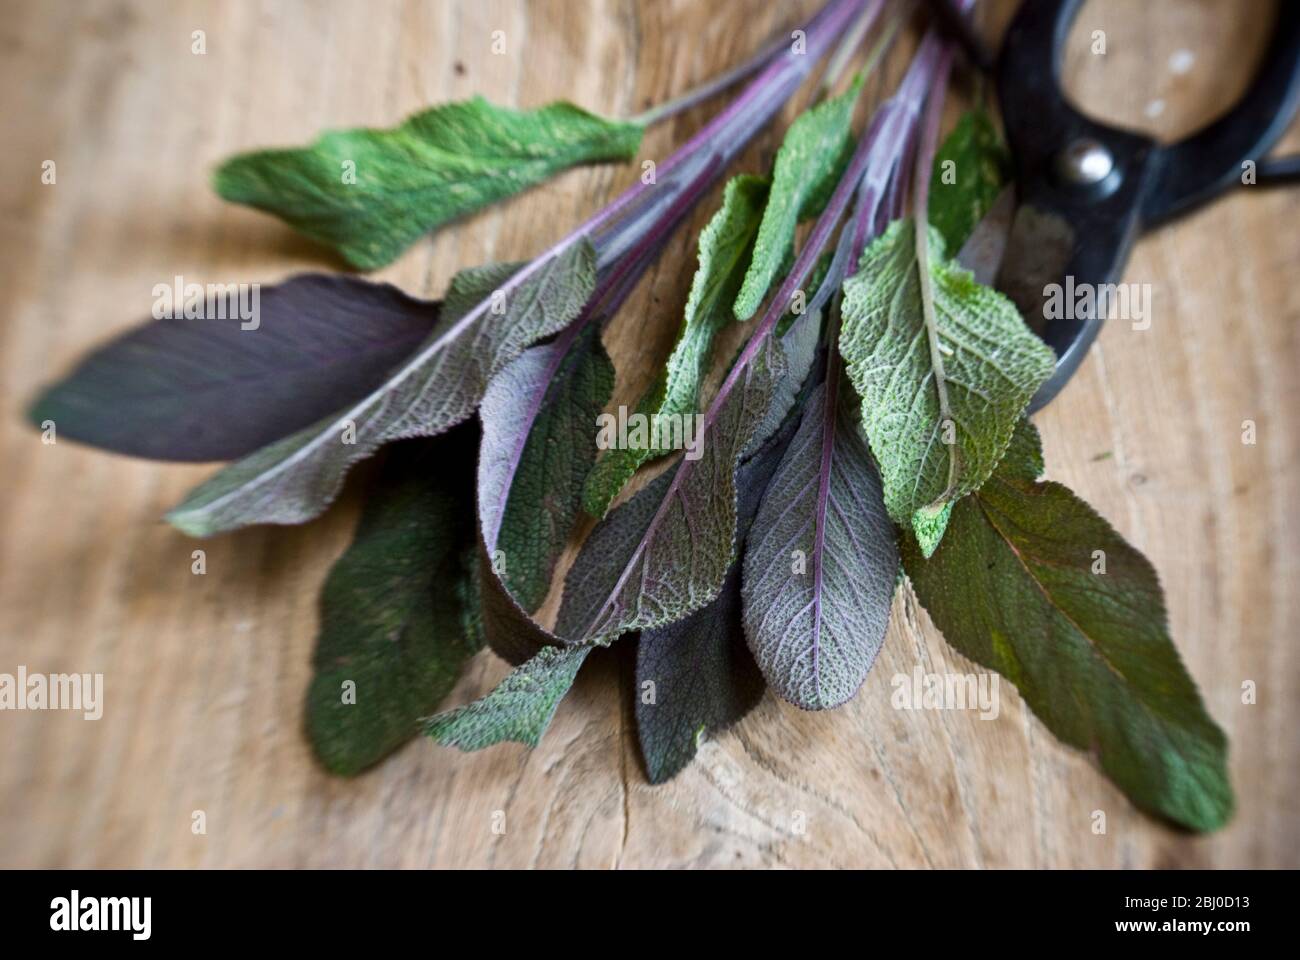 Rametto appena tagliato di foglie di salvia viola su vecchia superficie di legno, con forbici giapponesi - Foto Stock